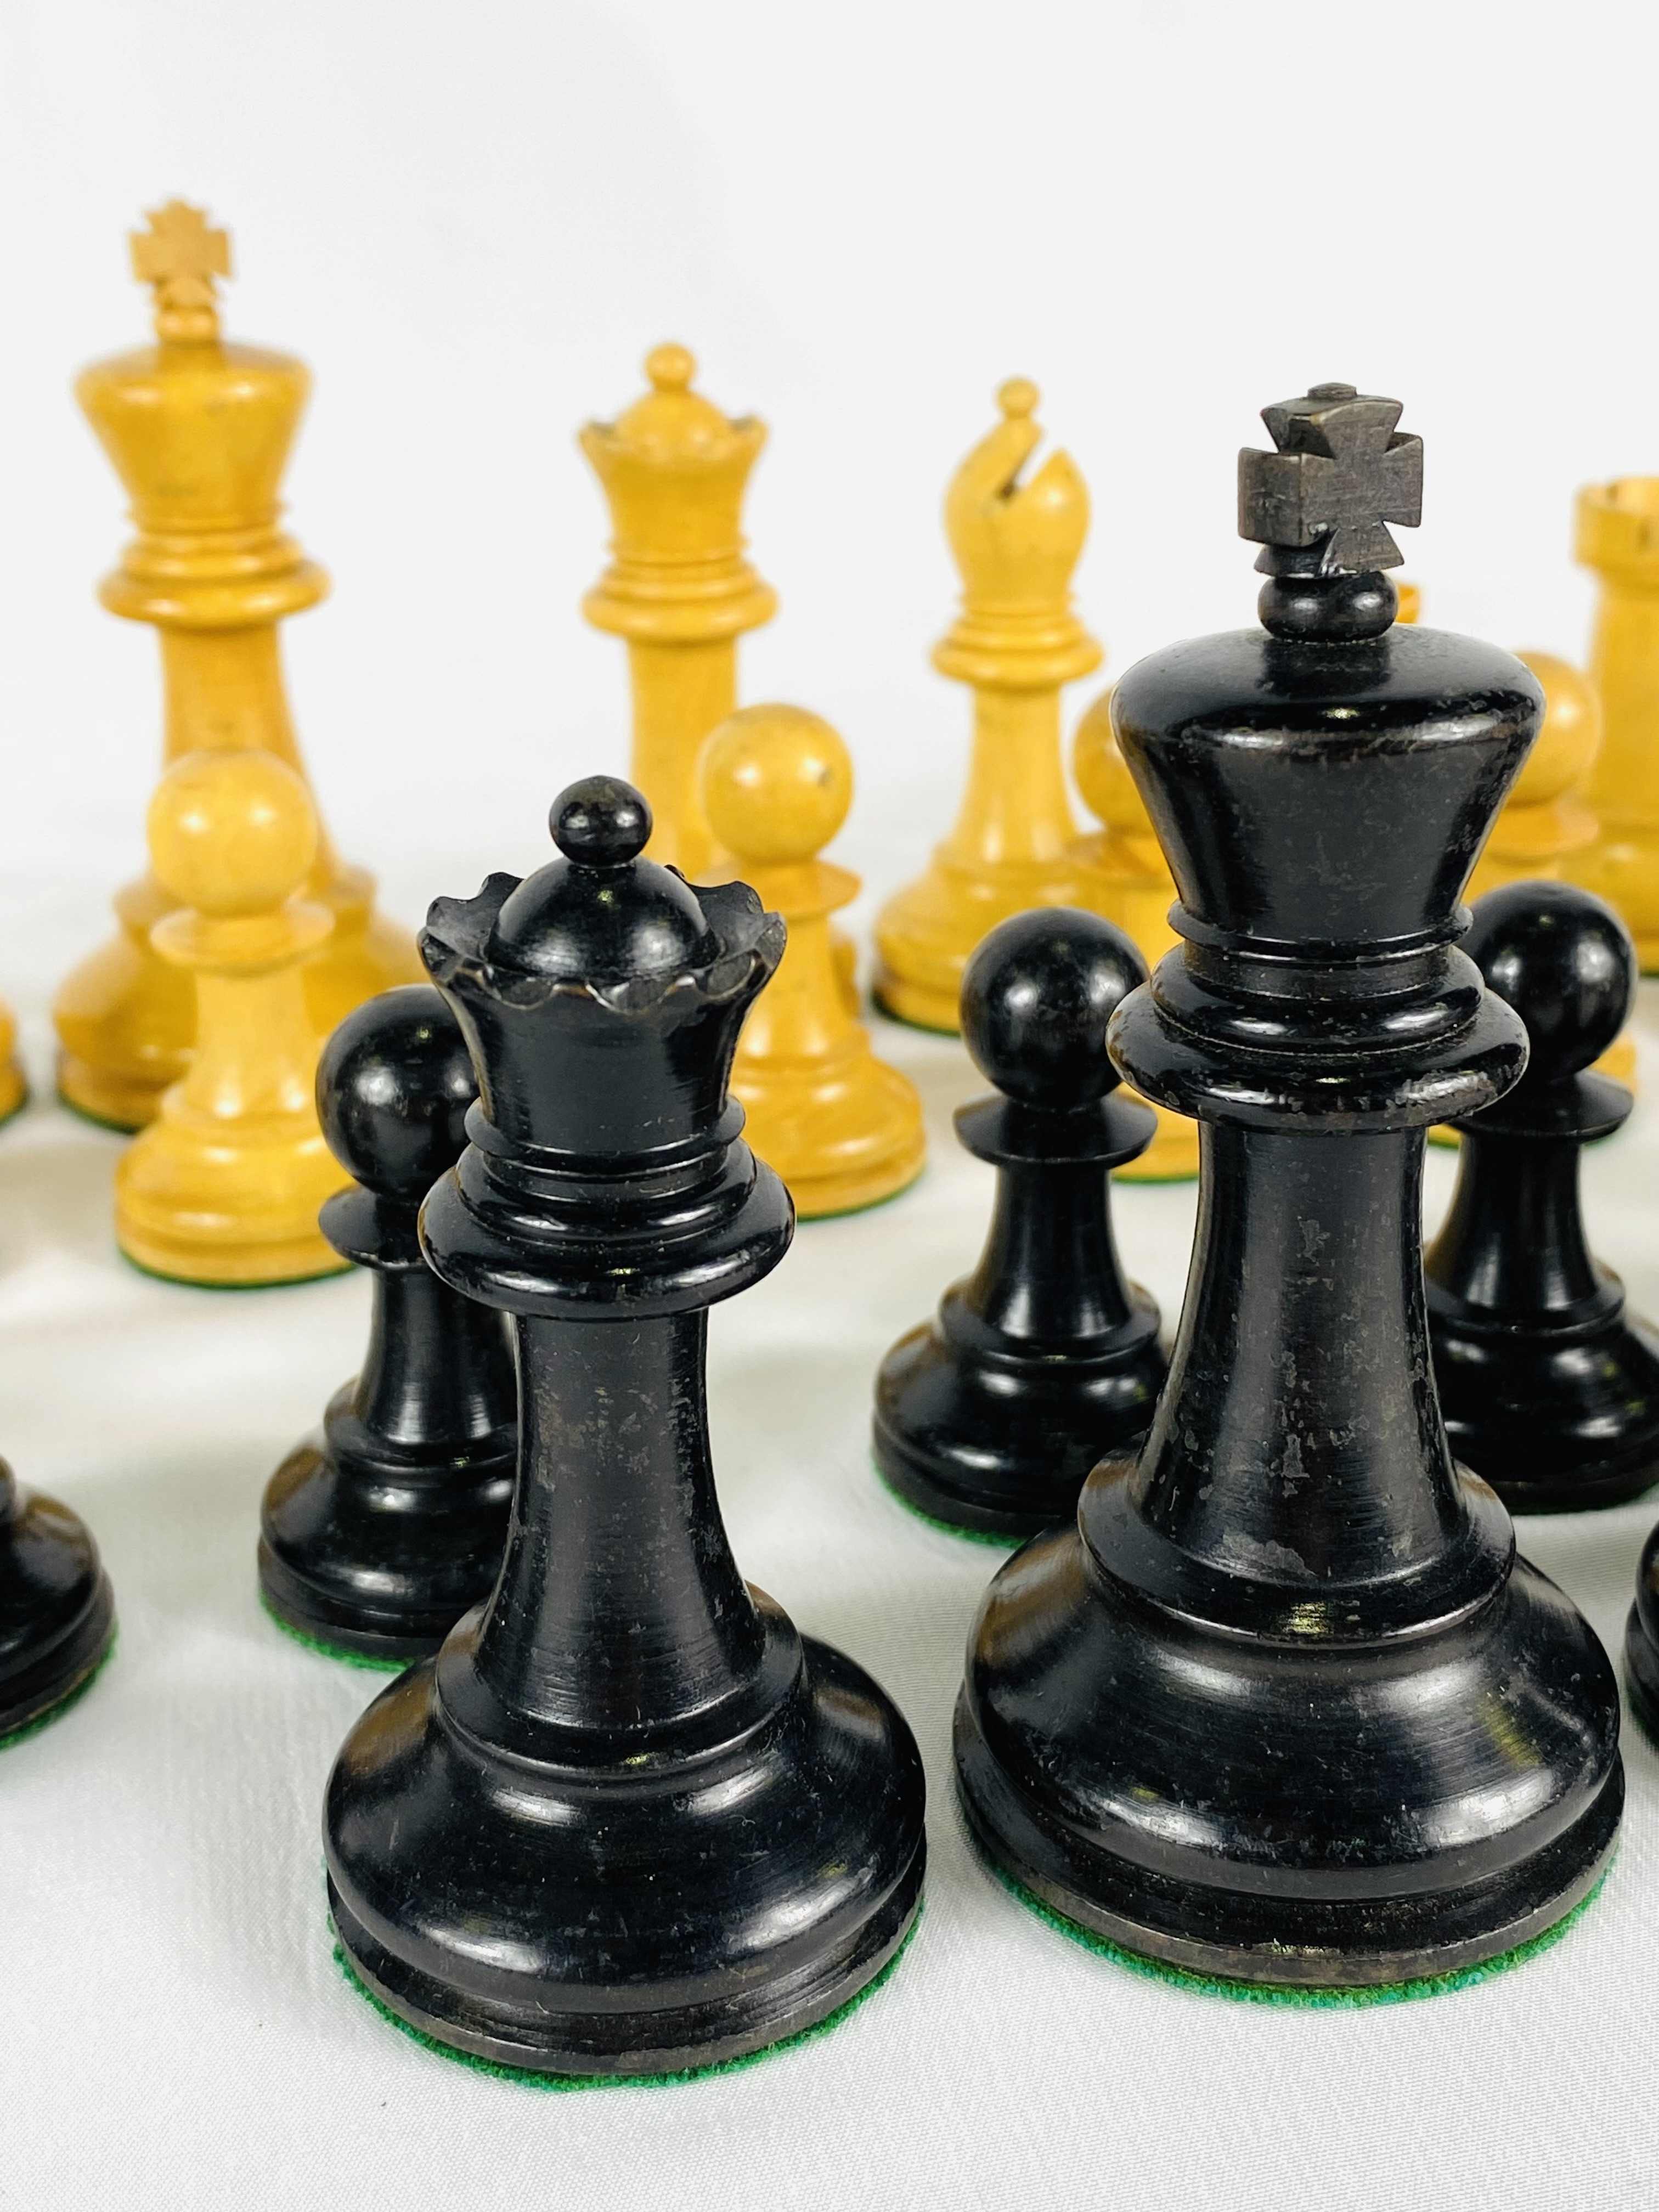 Boxwood and ebony Staunton style chess set - Image 5 of 6